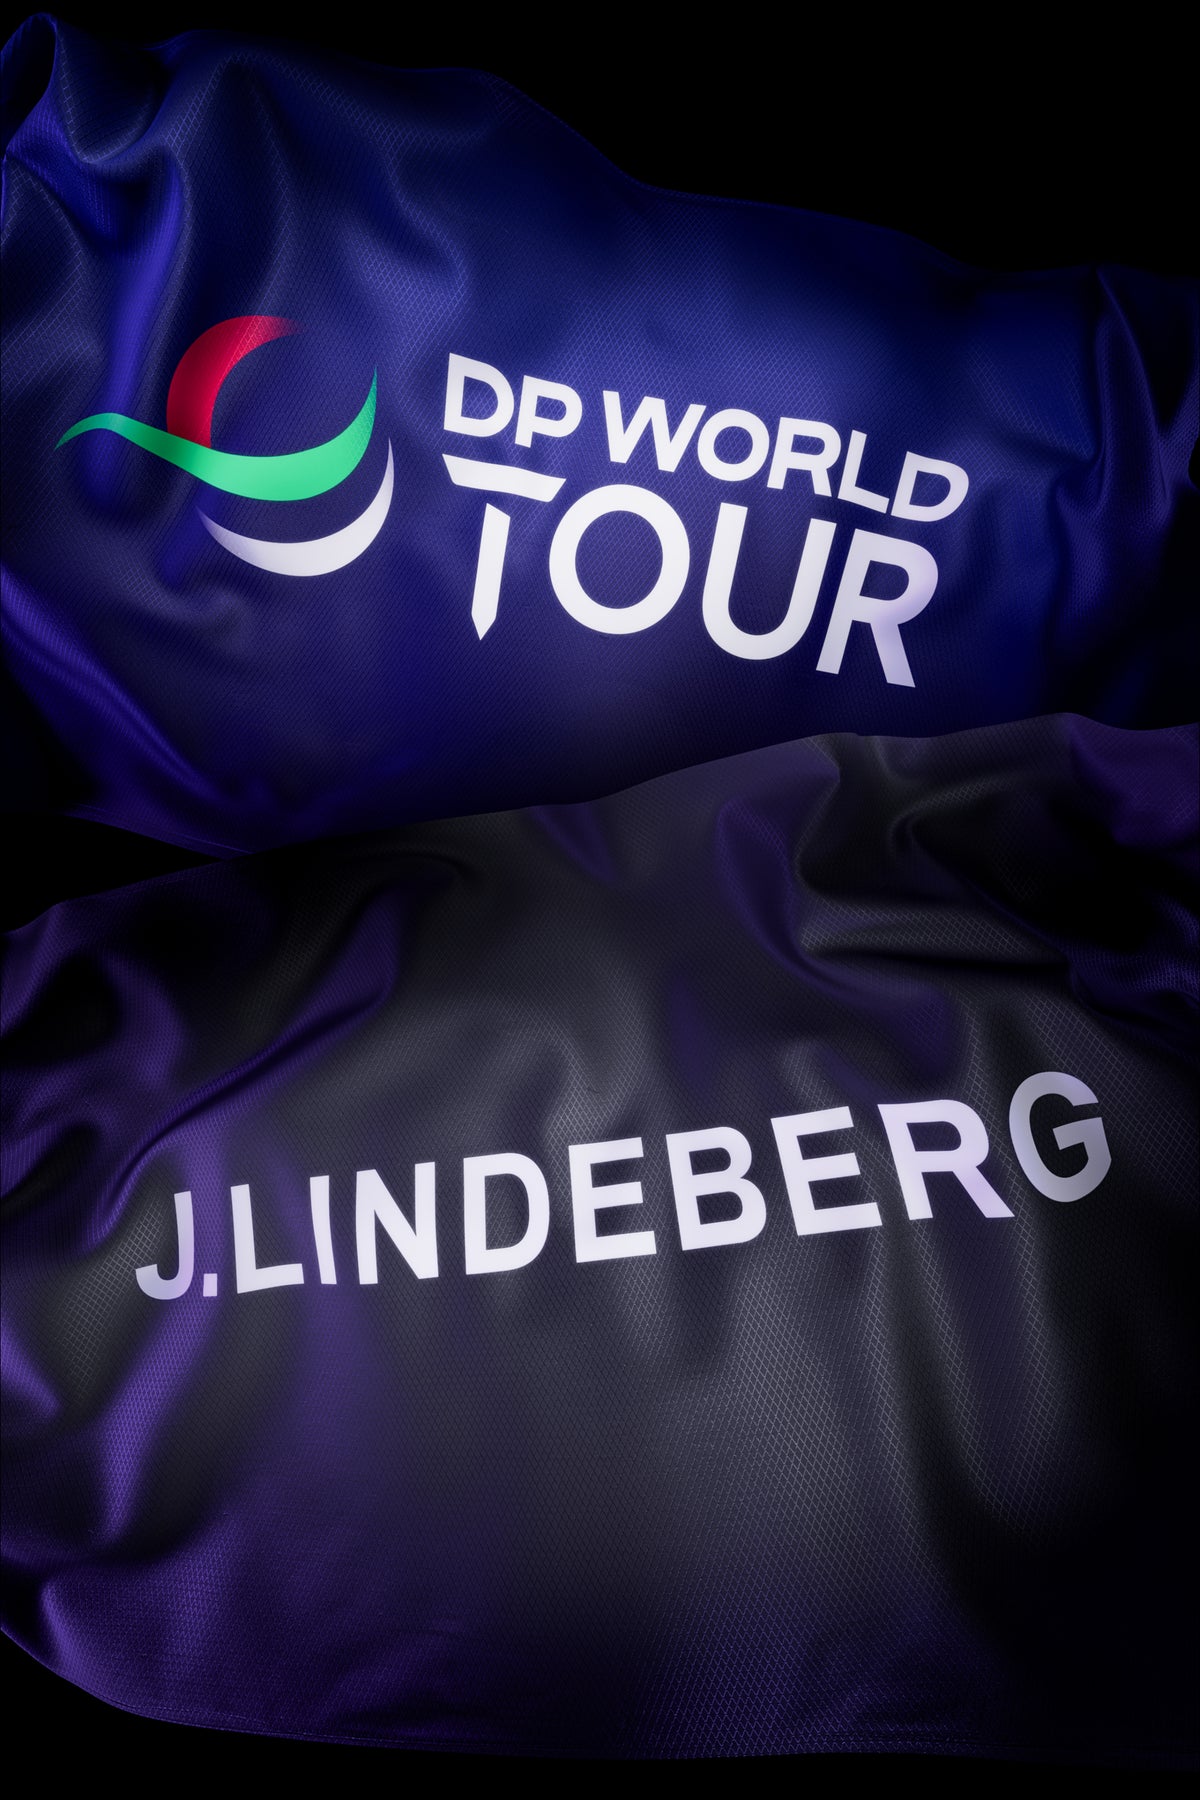 J.Lindeberg Partners with DP World Tour